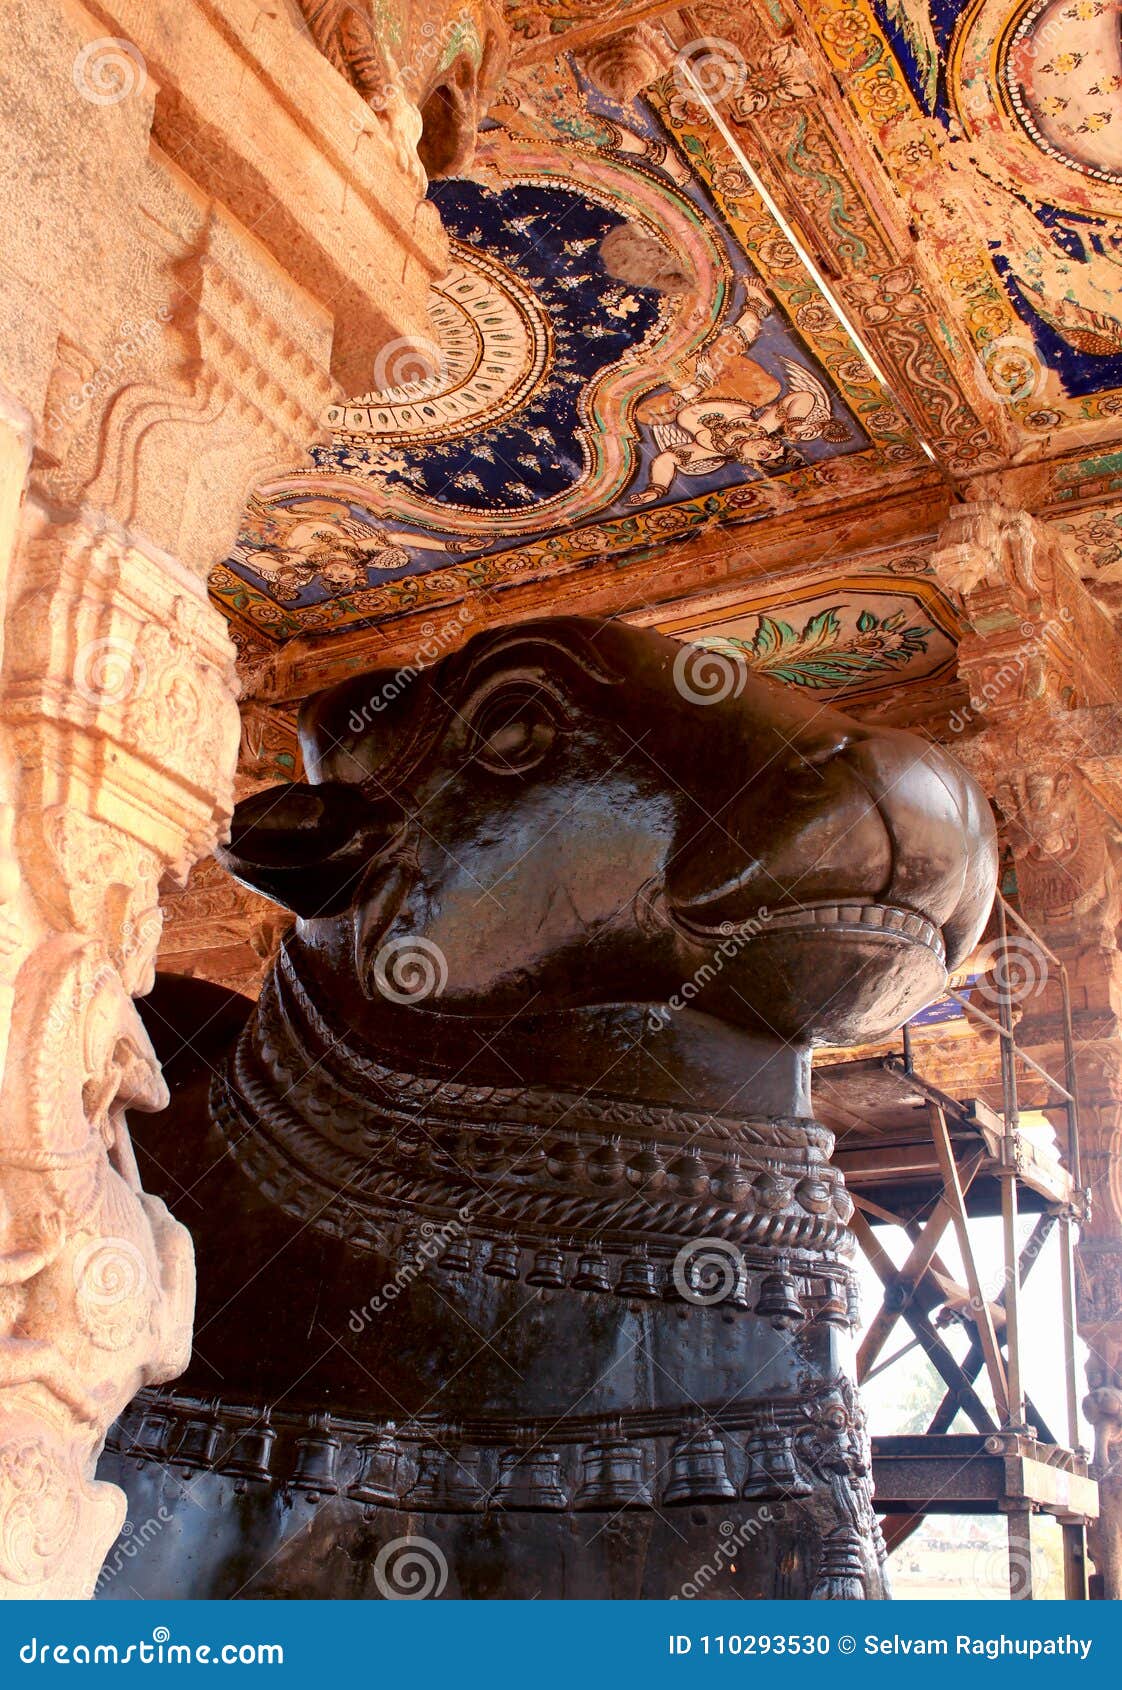 The Giant Bull -nandhi- Statue of the Ancient Brihadisvara Temple ...